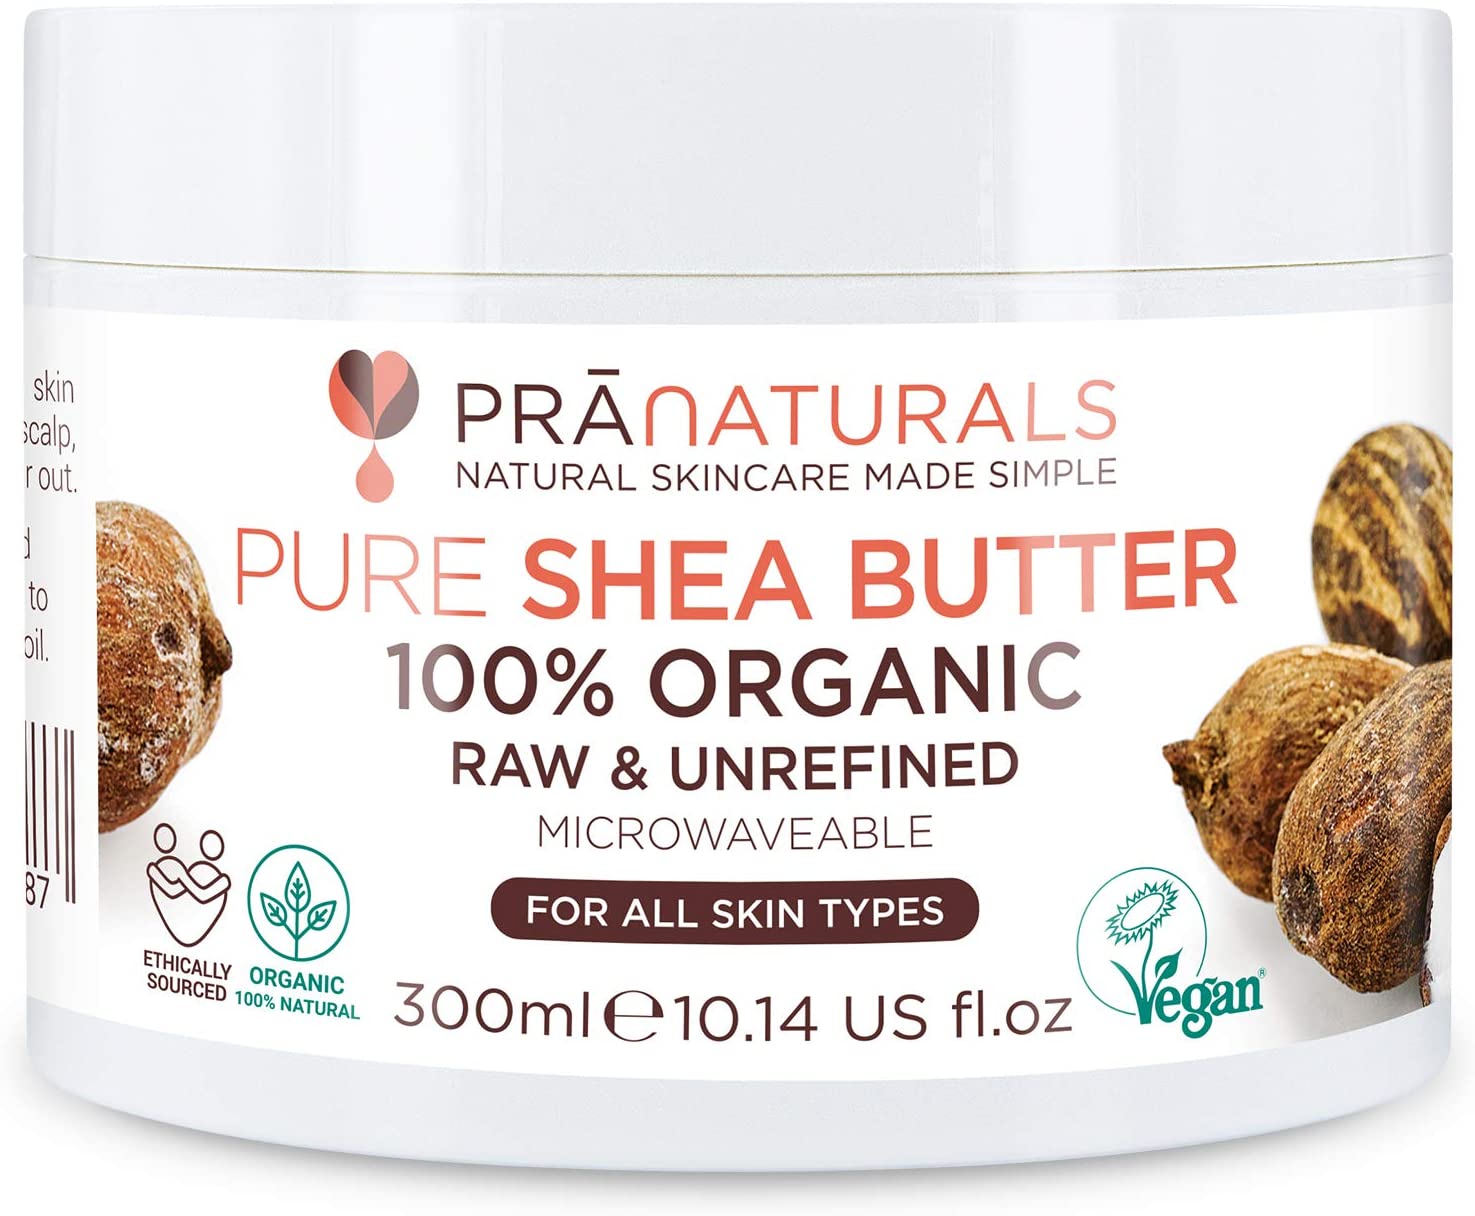 PraNaturals Organic Shea Butter Moisturiser Cream